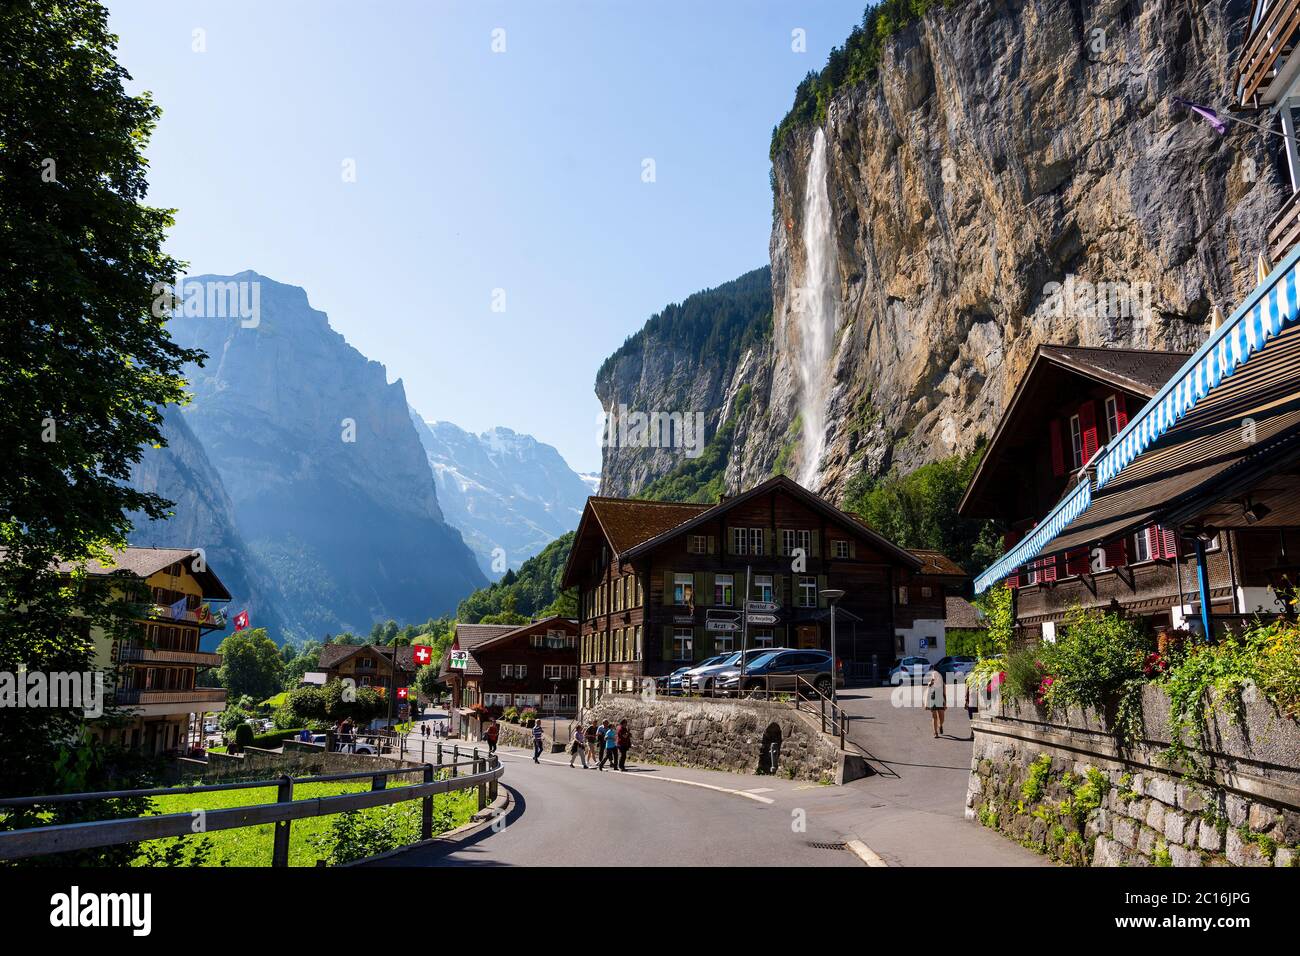 Lauterbrunnen villaggio svizzero, famosa destinazione nella regione dello Jungfrau, Oberland Bernese, Svizzera. Foto Stock